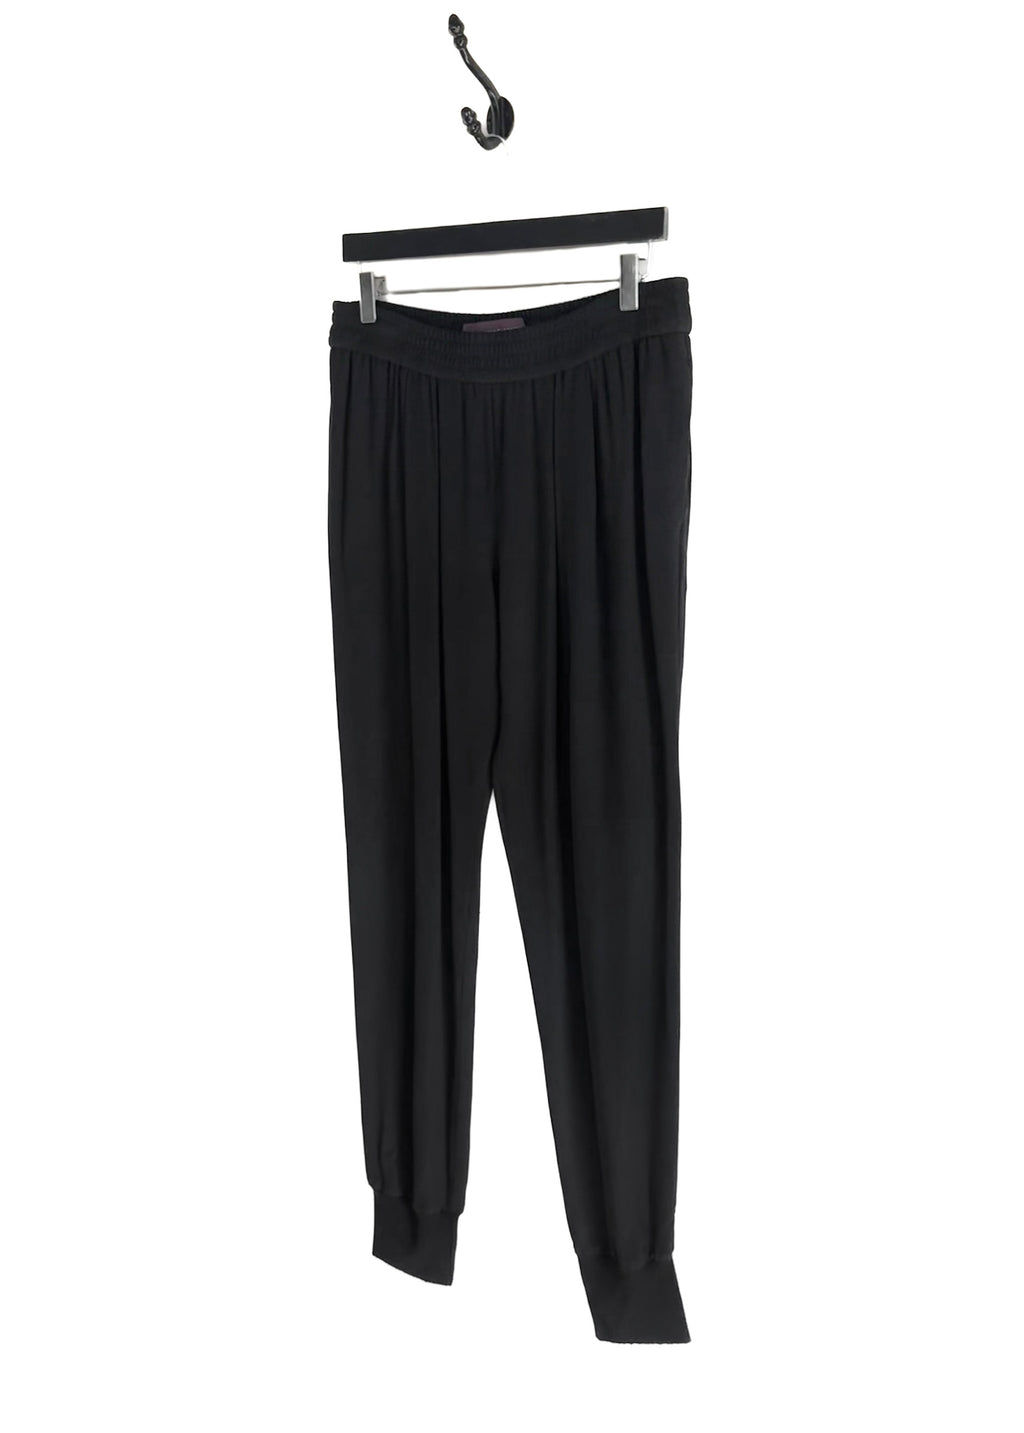 Pantalon de jogging noir classique Stella McCartney 2010